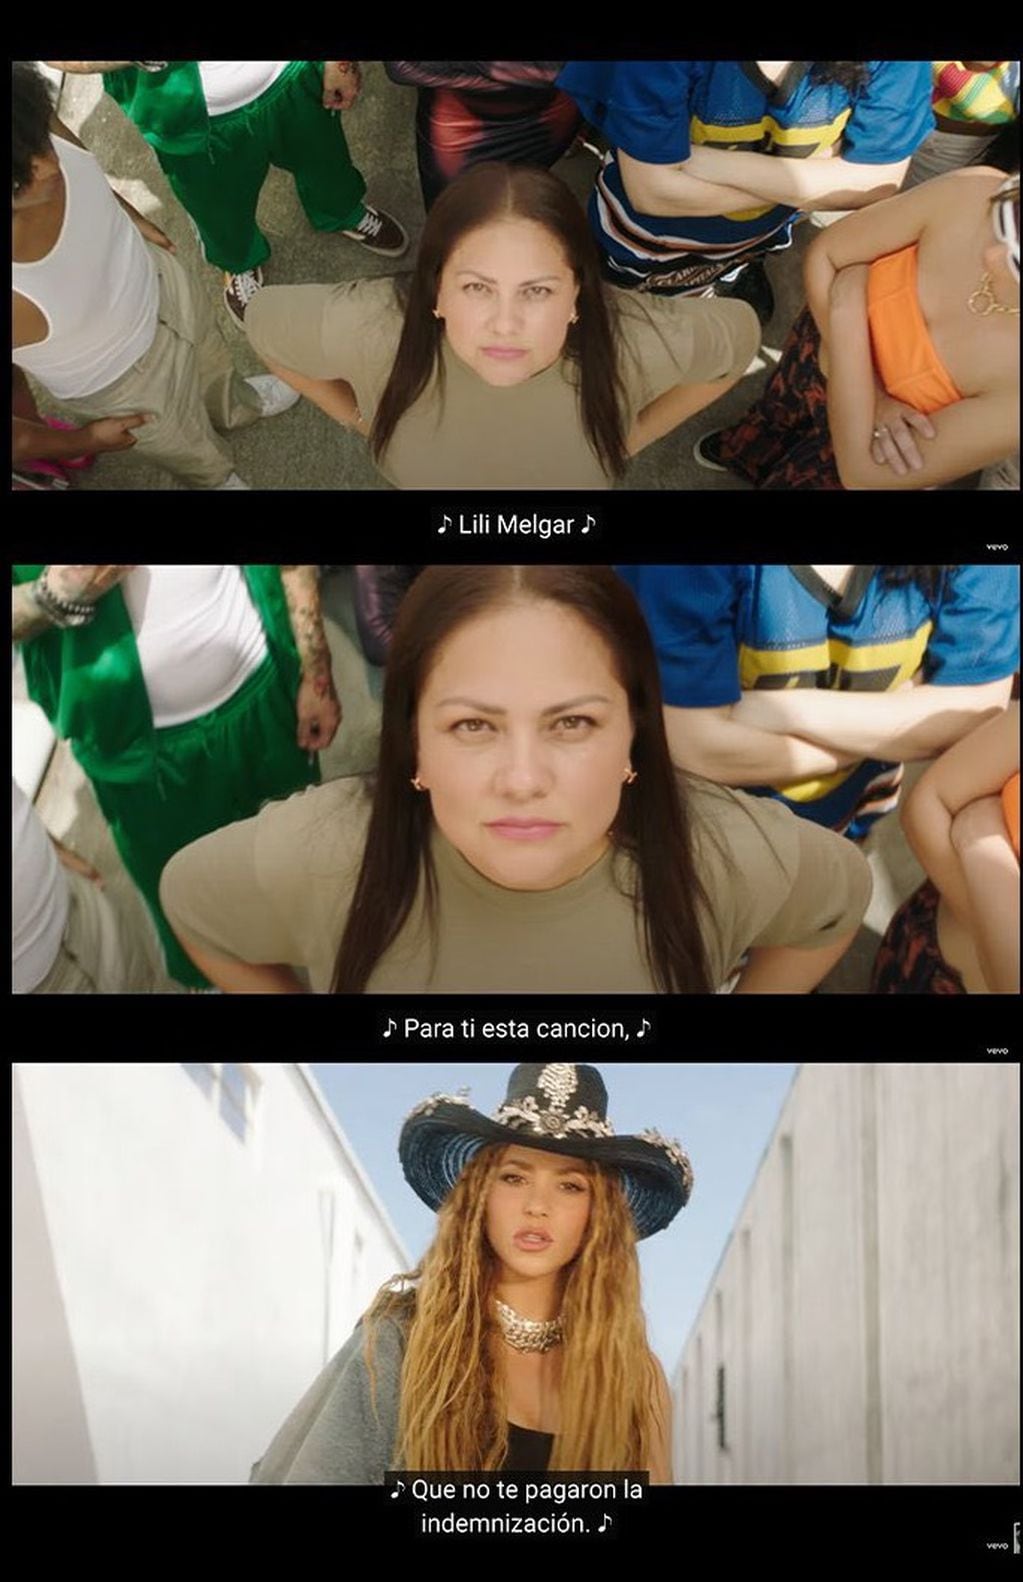 Lili Melgar en el nuevo video "El jefe" de Shakira: la cantante le dedica el tema